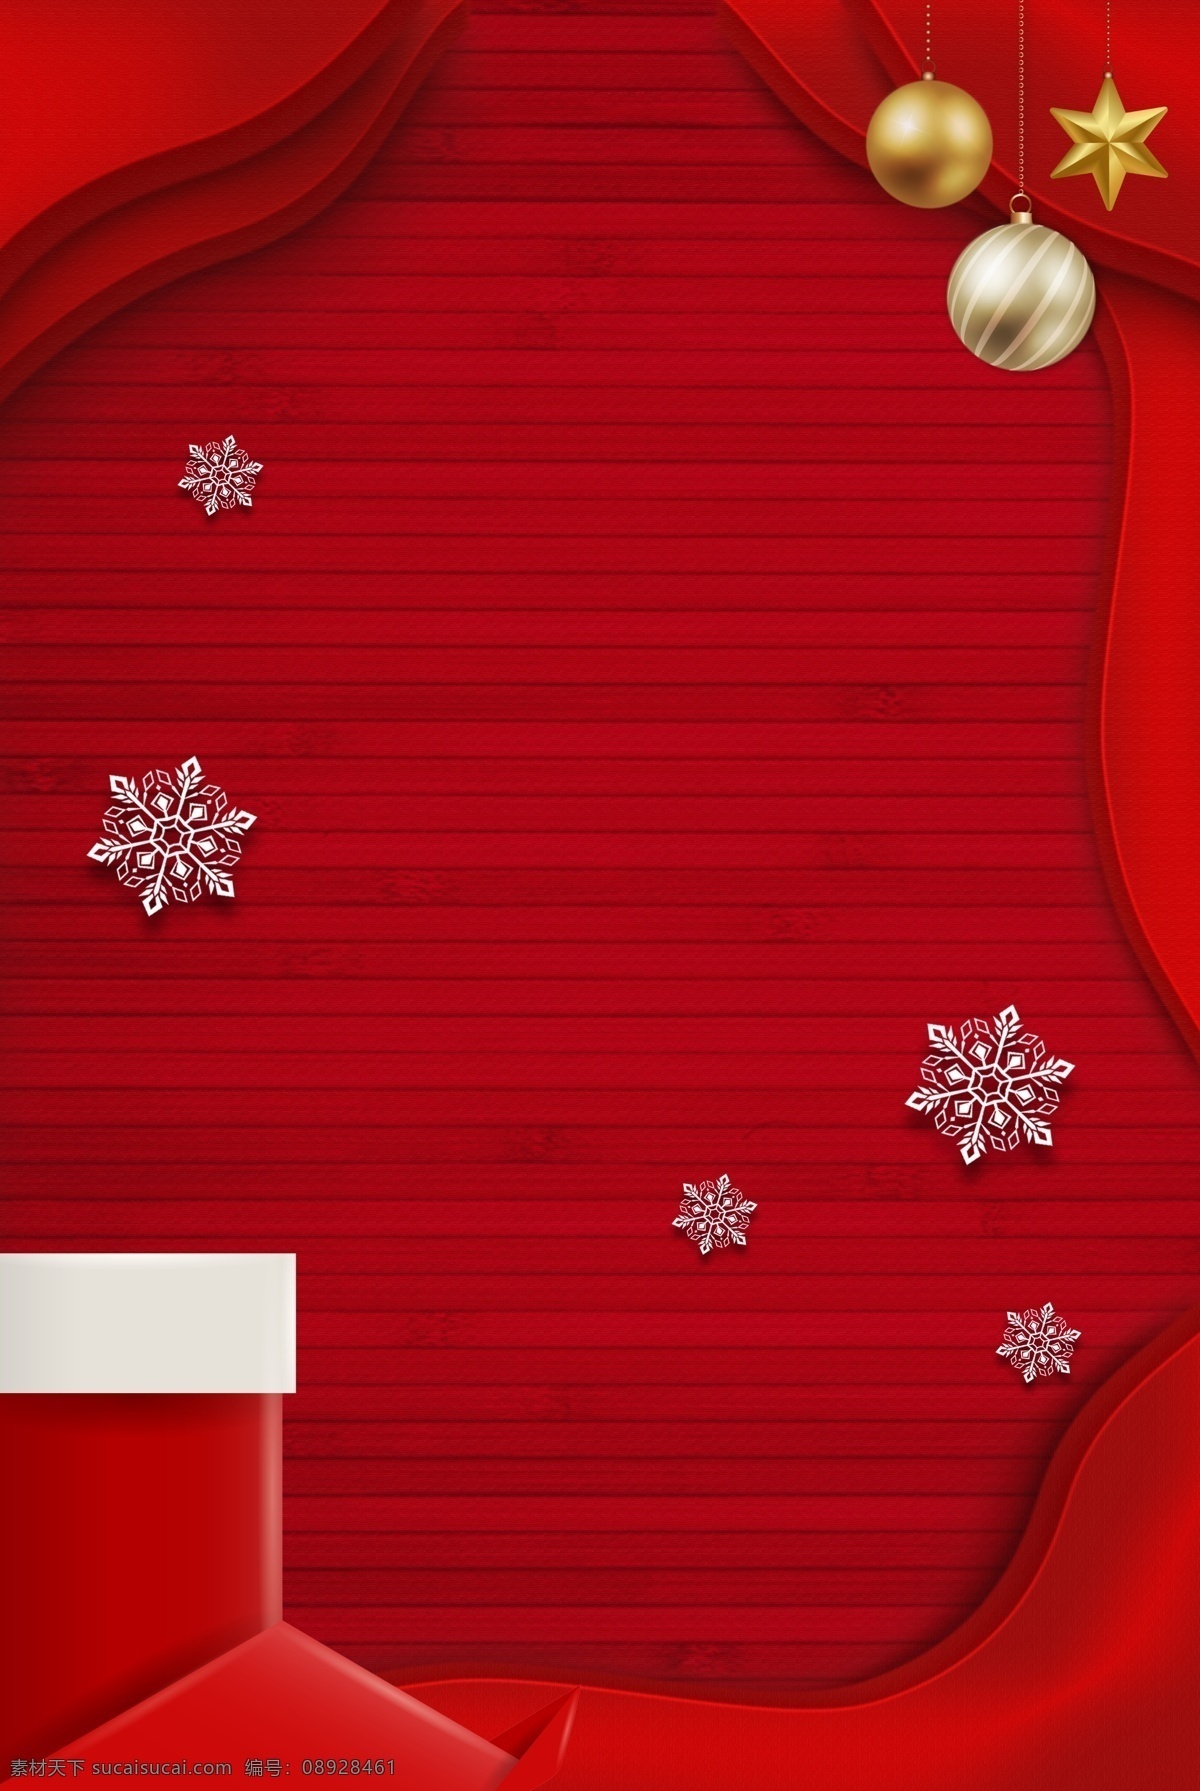 圣诞节 折纸 风 红色 圣诞 袜 海报 圣诞贺卡 圣诞活动 简约 立体 圣诞袜 圣诞装饰 雪花